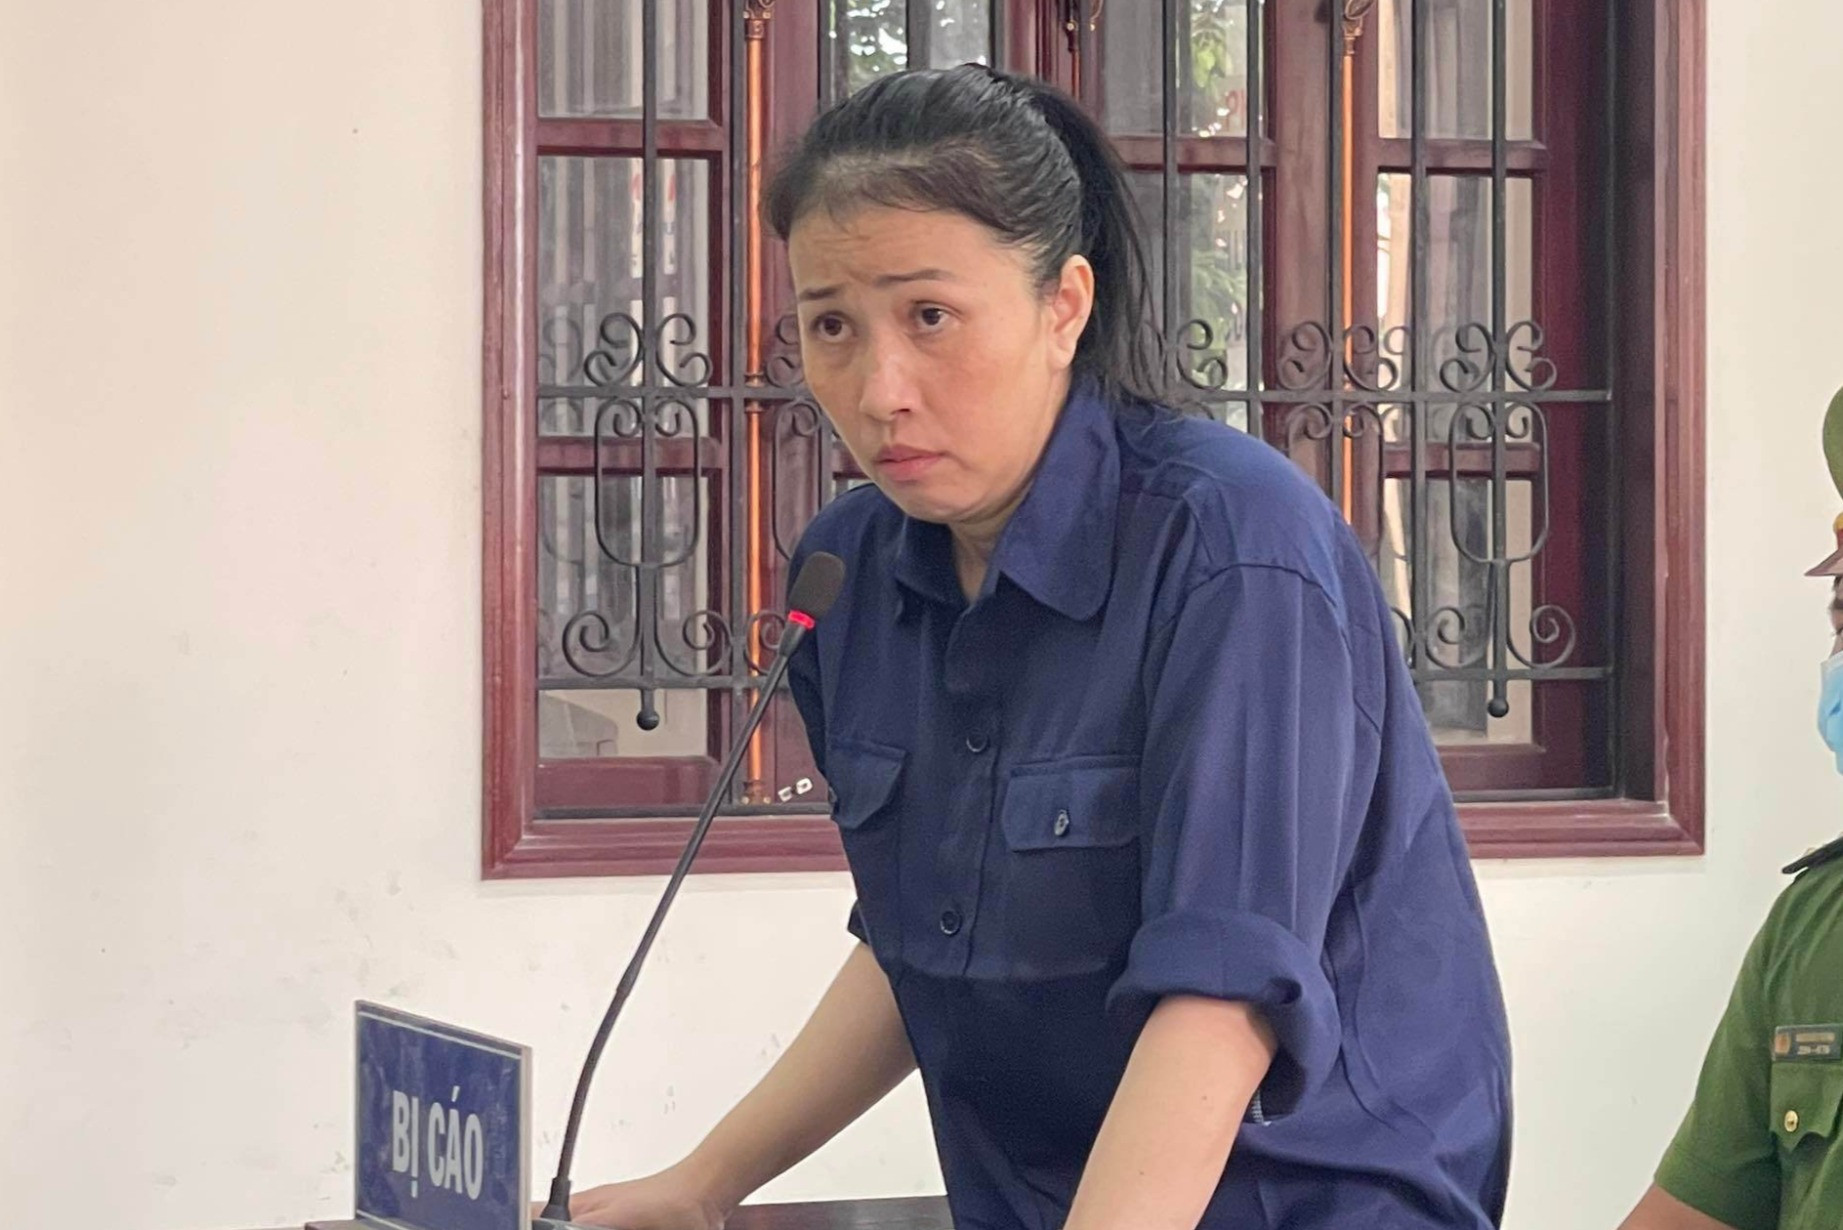 Giả danh phóng viên để lừa đảo, YouTuber Bích Thủy lãnh 8 năm tù